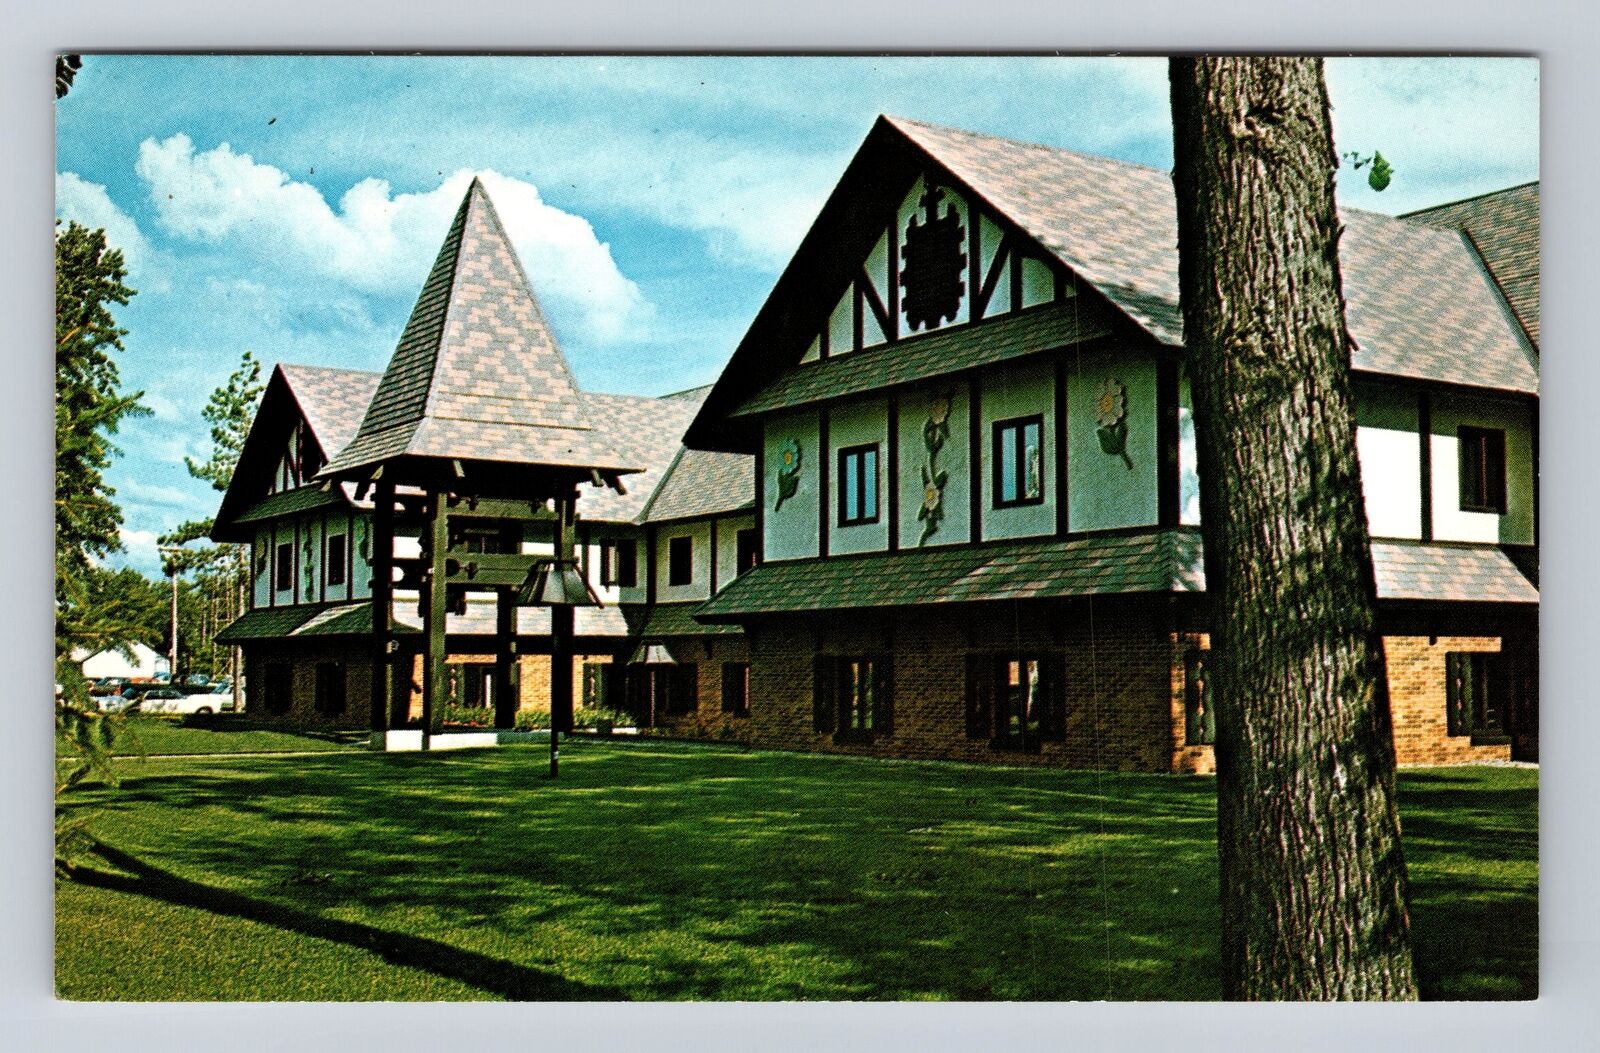 Gaylord MI-Michigan, City, County Building, Alpine Village, Vintage Postcard